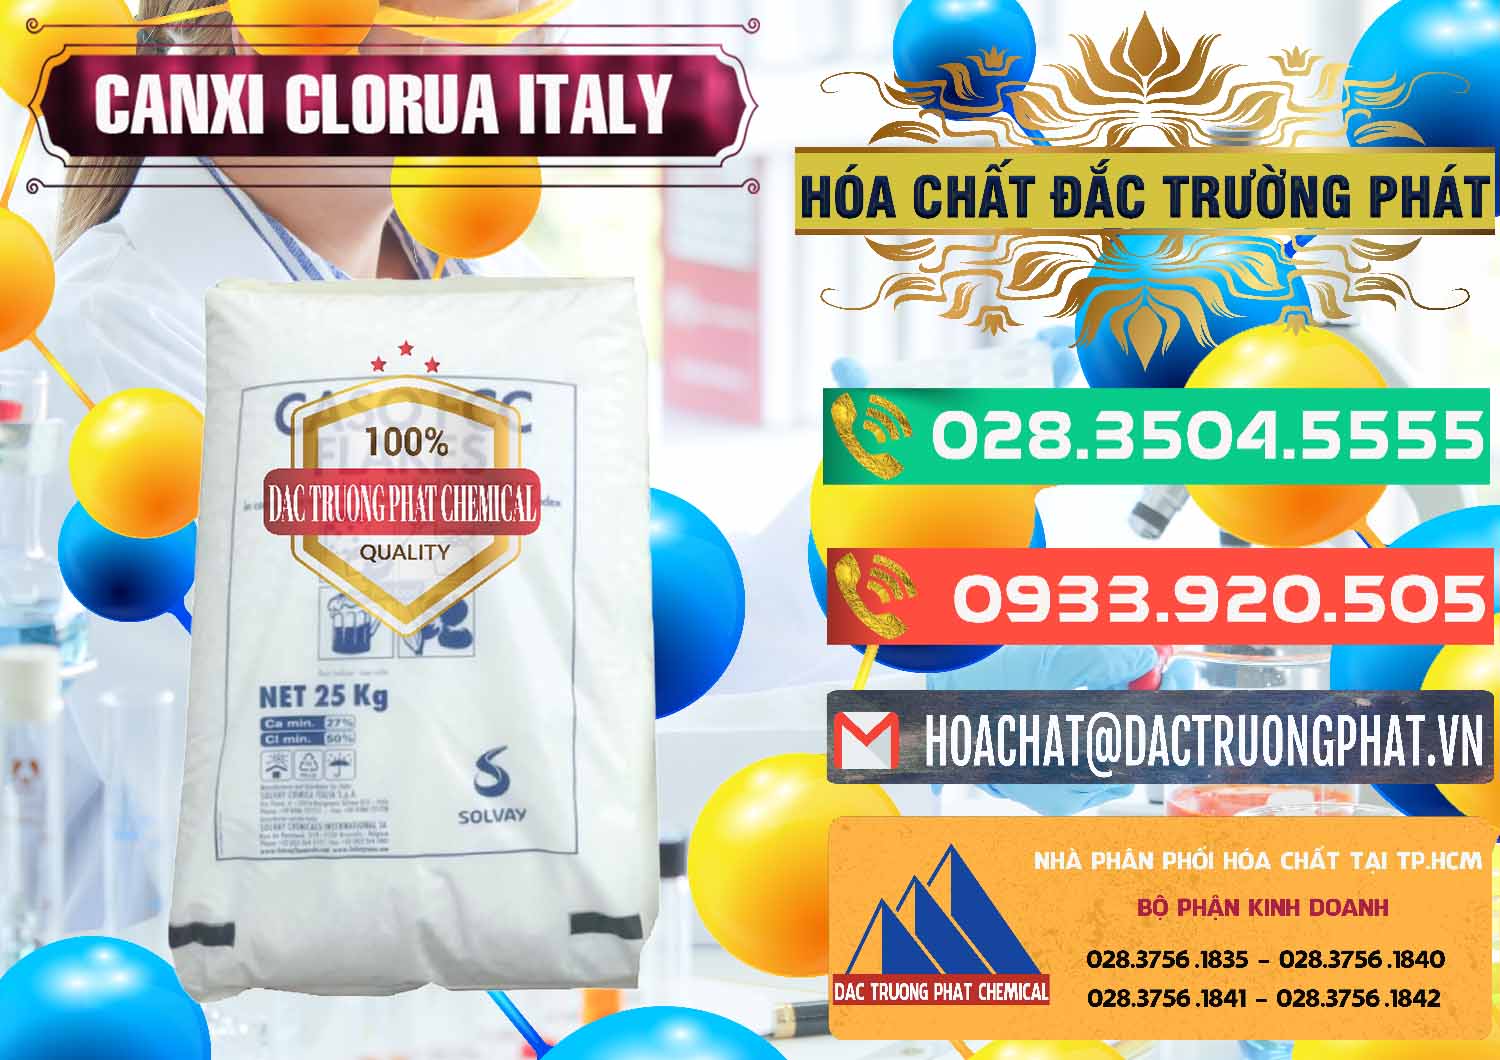 Nơi bán ( cung cấp ) CaCl2 – Canxi Clorua Food Grade Ý Italy - 0435 - Chuyên bán - phân phối hóa chất tại TP.HCM - congtyhoachat.com.vn